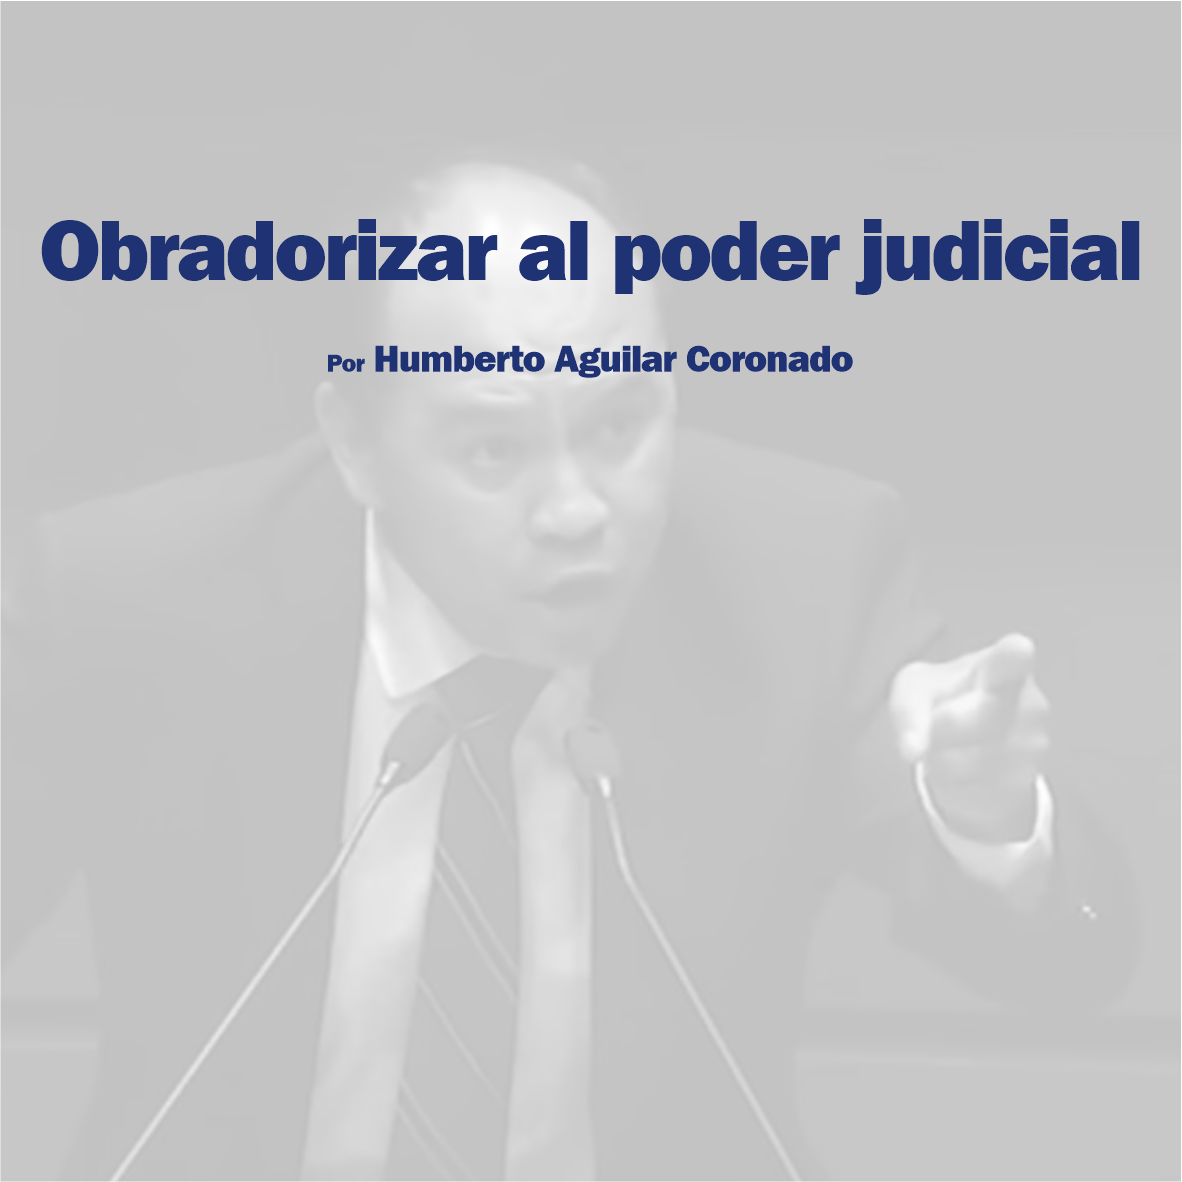 Obradorizar al poder judicial